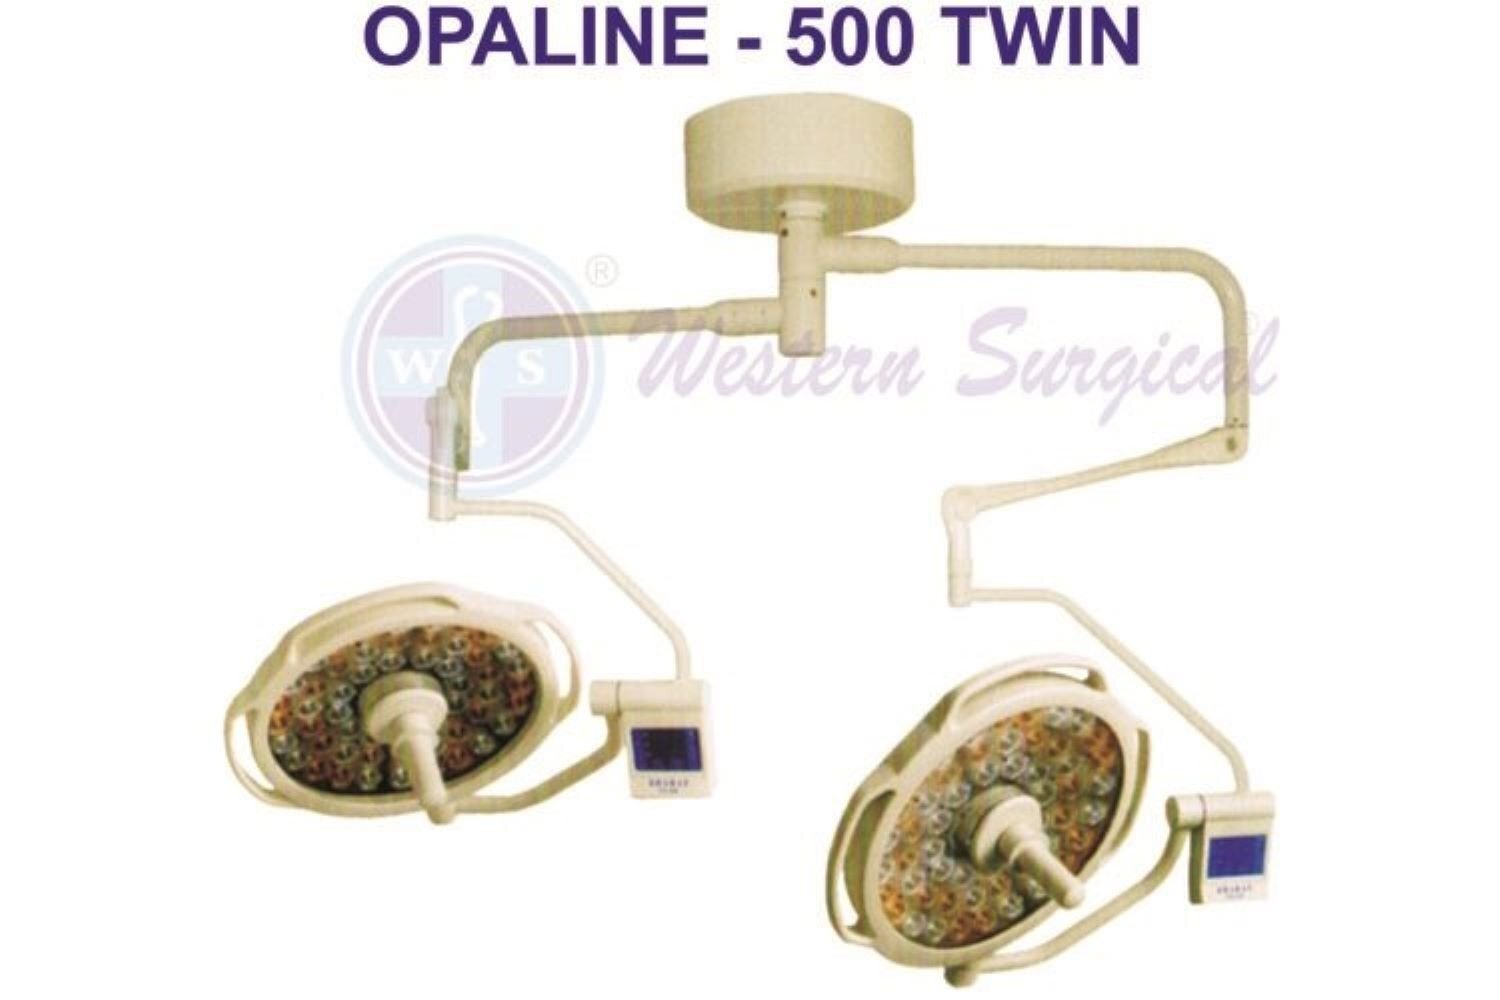 LED  Opaline  500  Twin  Ceiling  Model